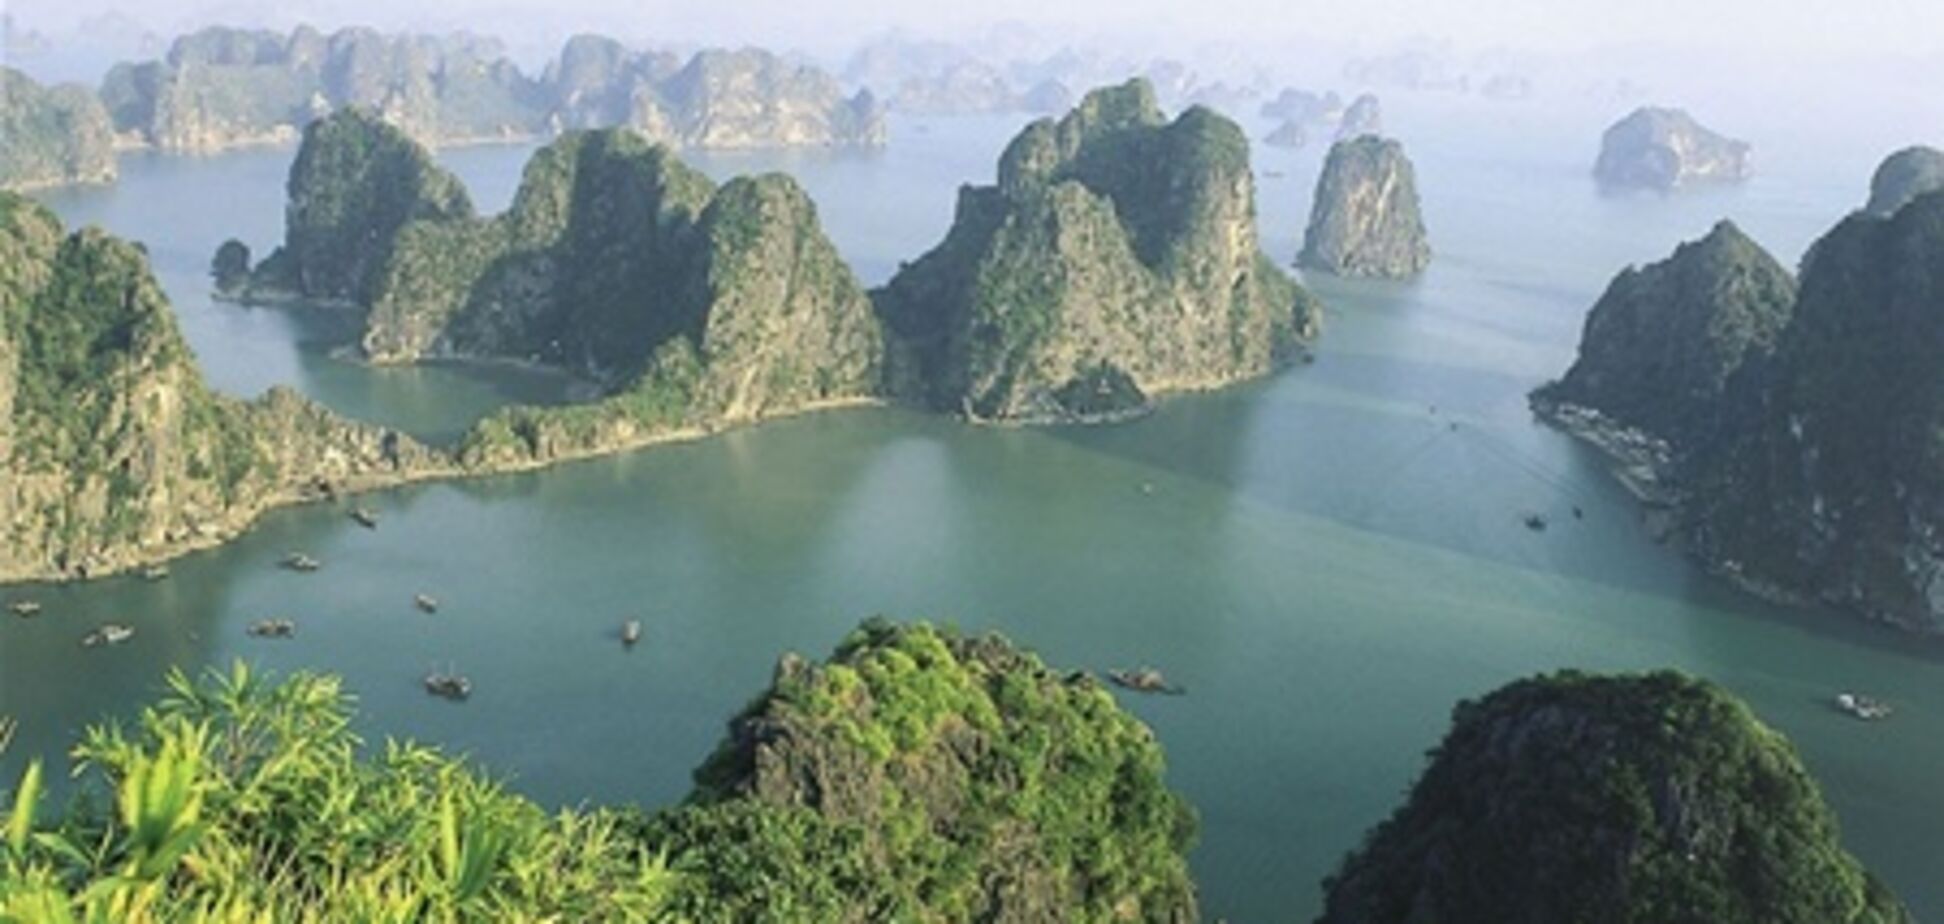 В Китае решили развивать туризм на оспариваемых территориях